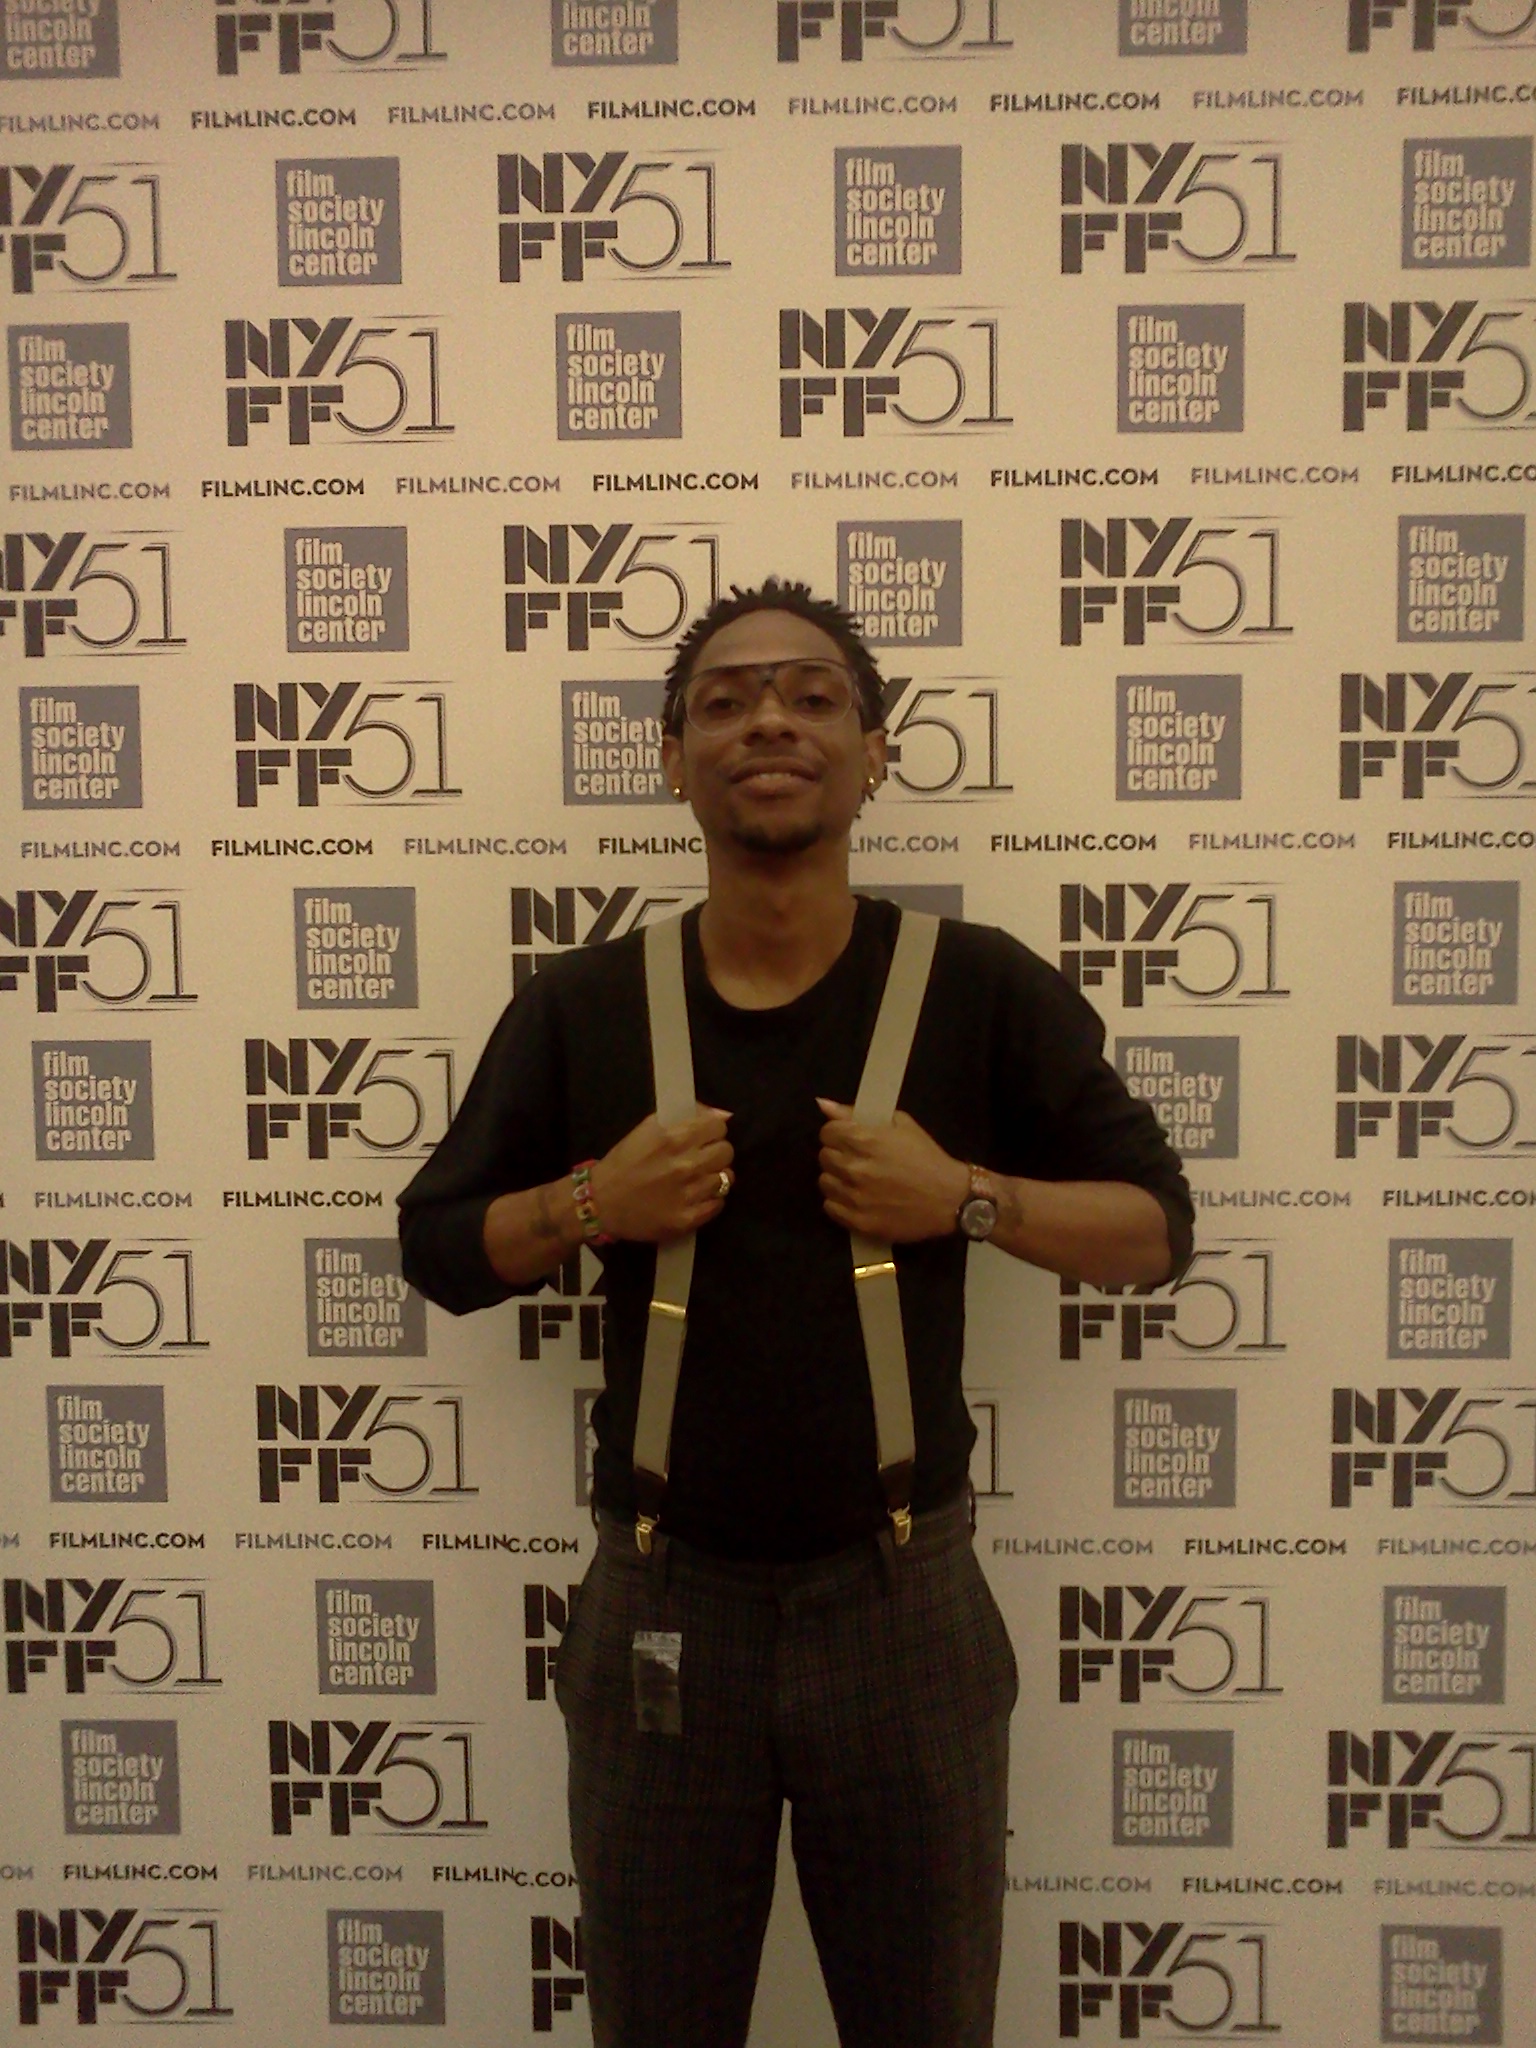 New York Film festival